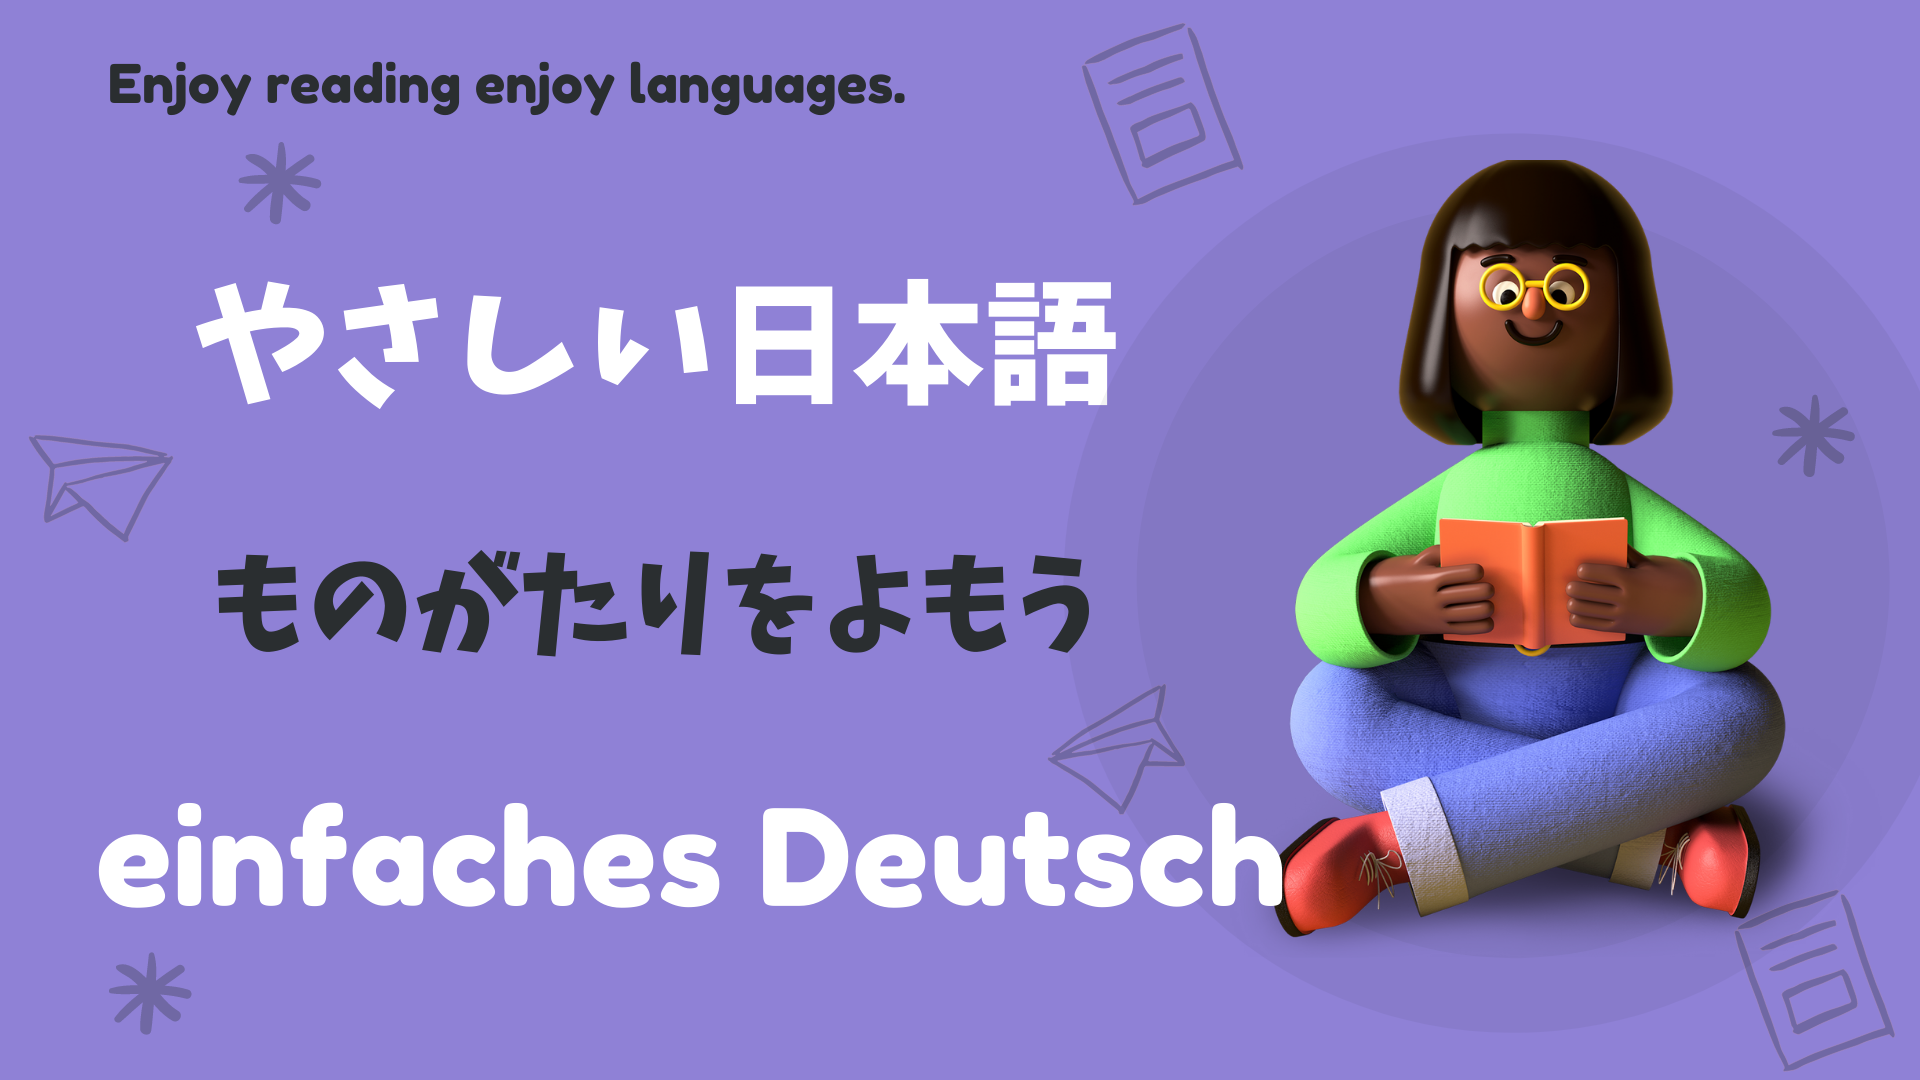 やさしい日本語ストーリー🏃‍♂Einfache deutsche Geschichte